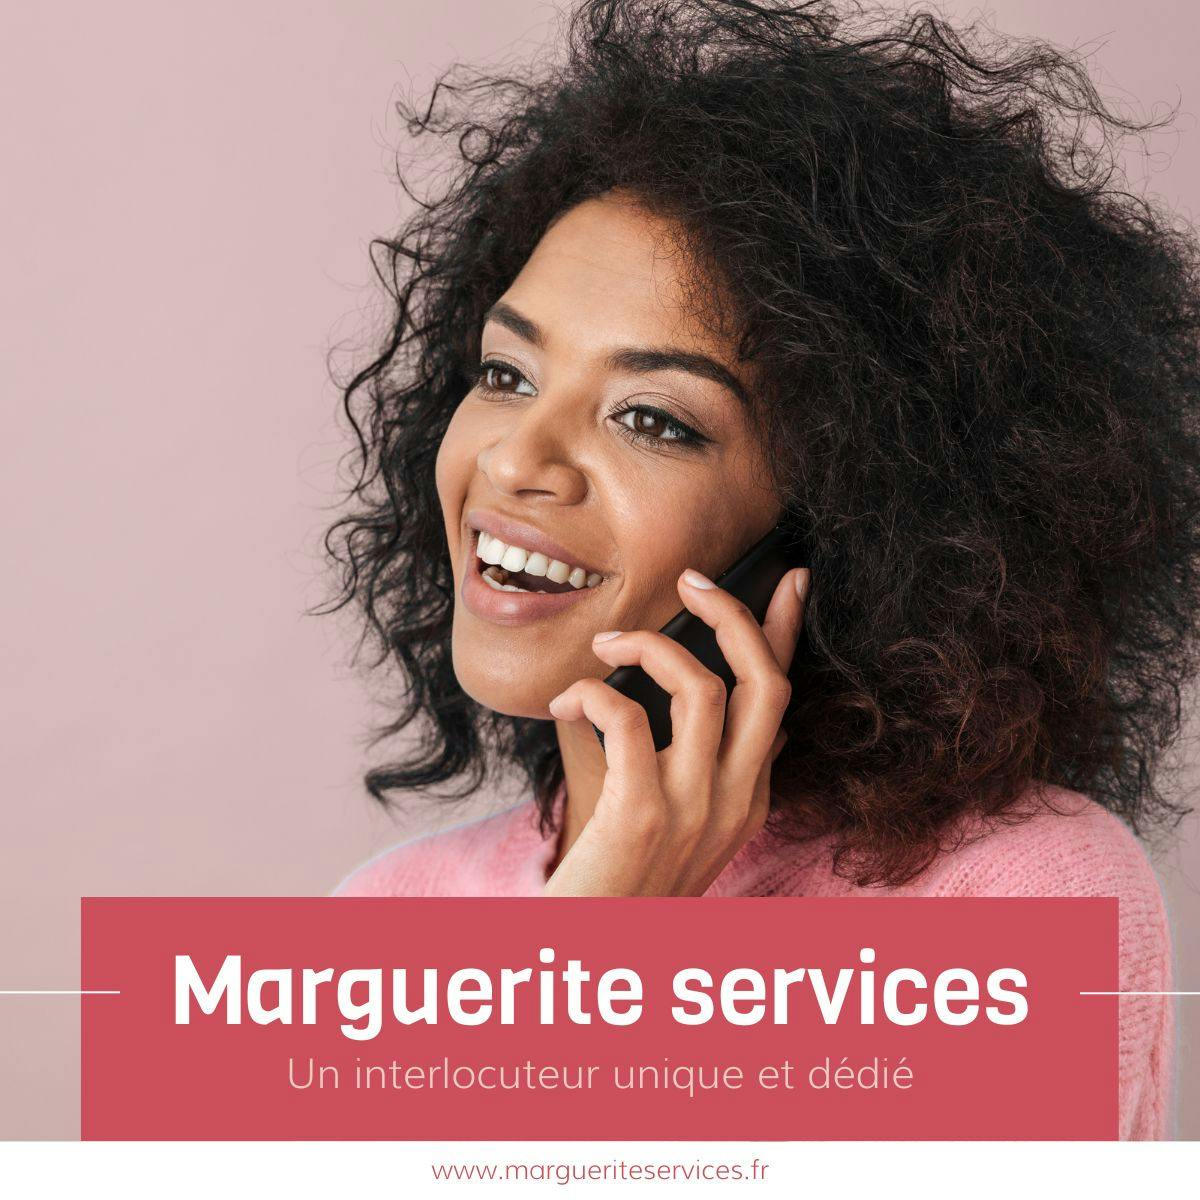 Marguerite Services une approche unique